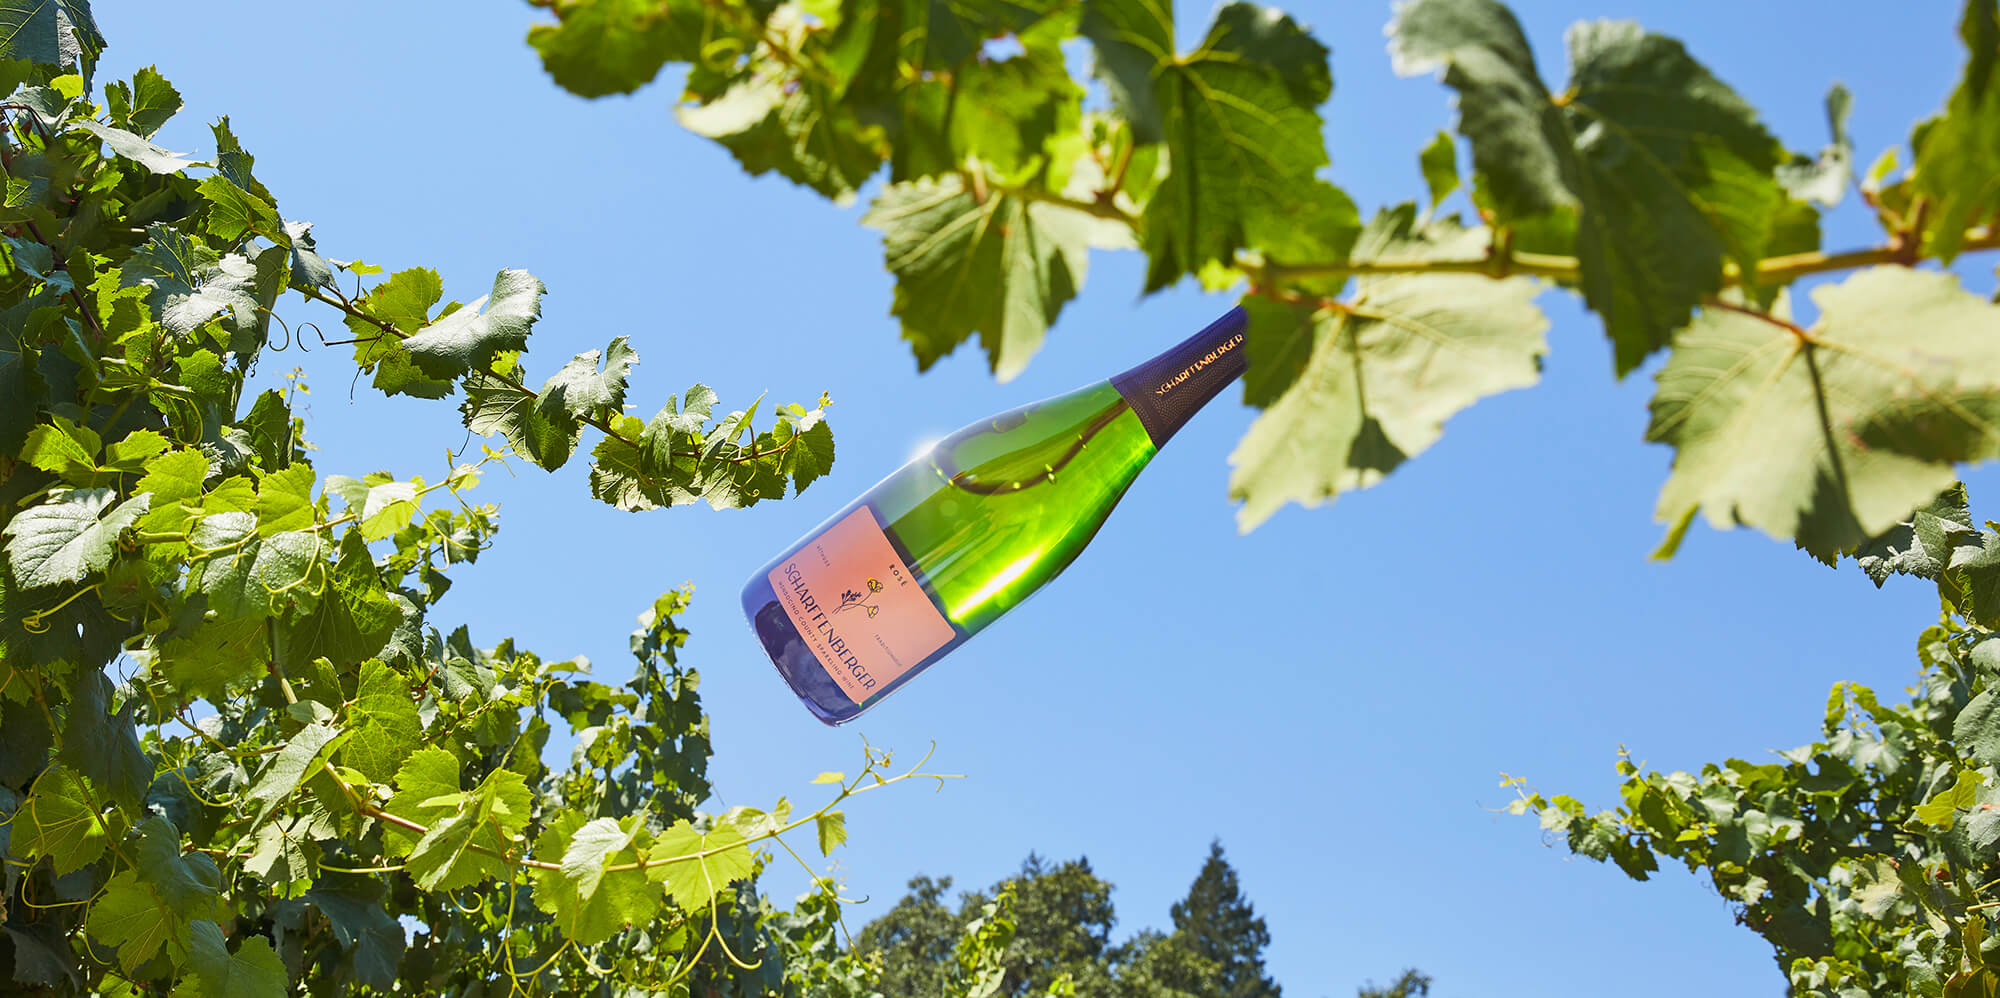 Wine bottle in the sun amongst vines